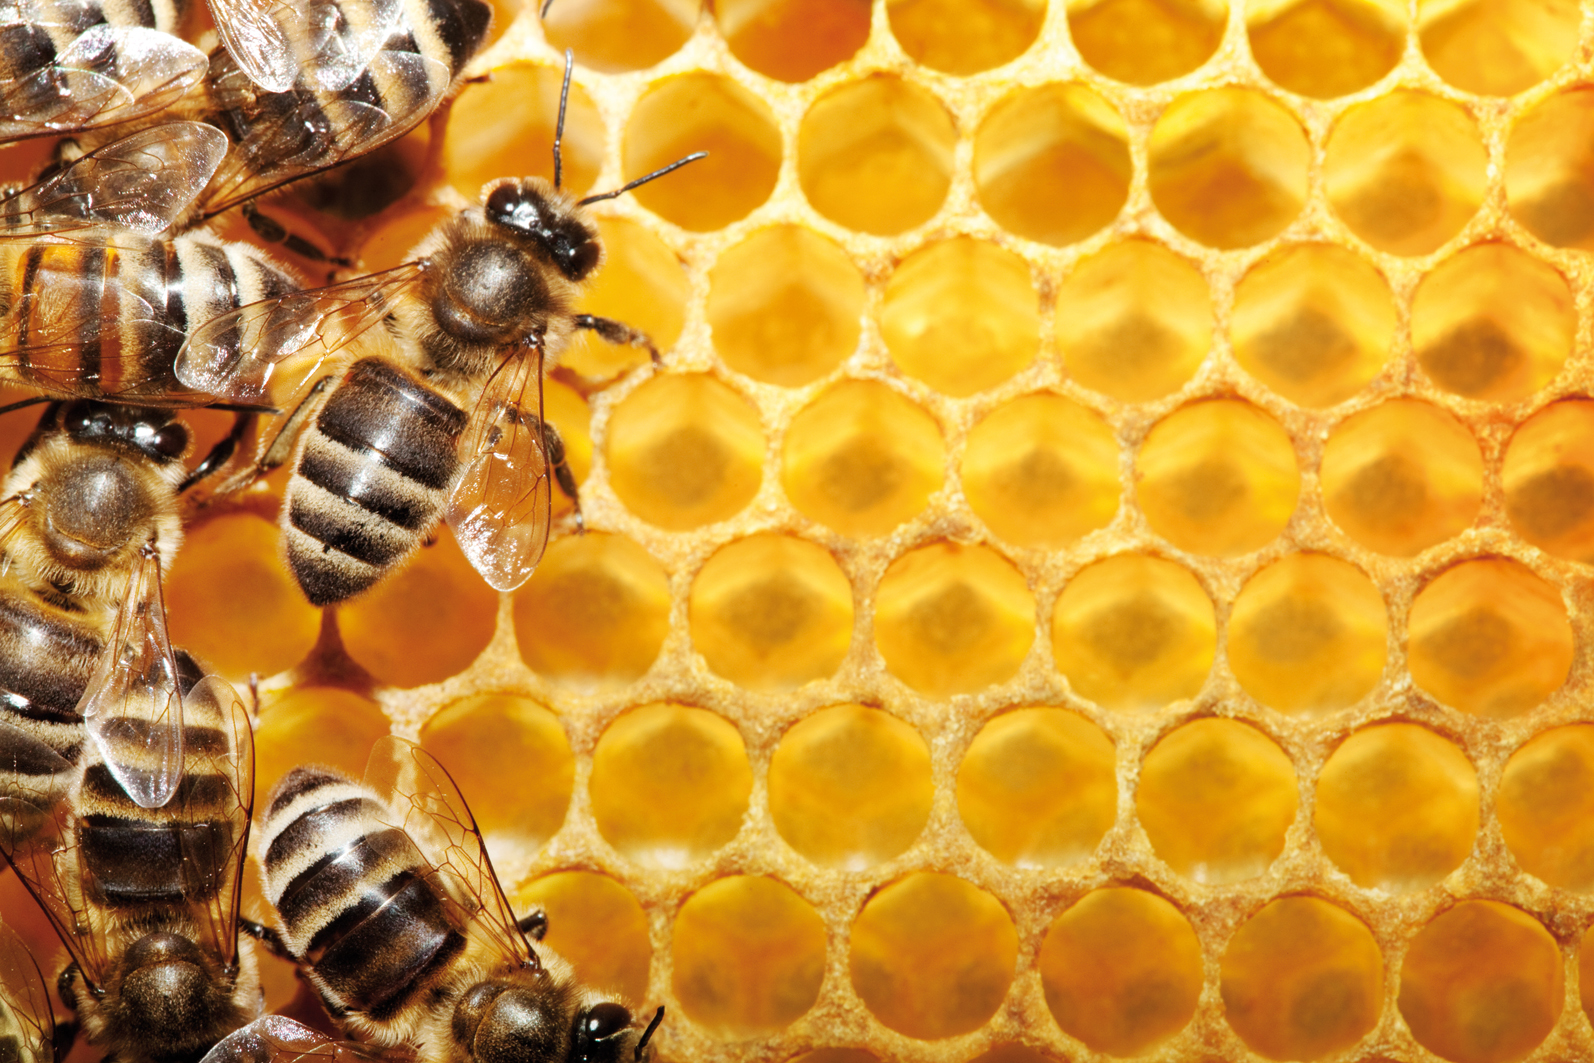 Uzbekistan keen to develop beekeeping